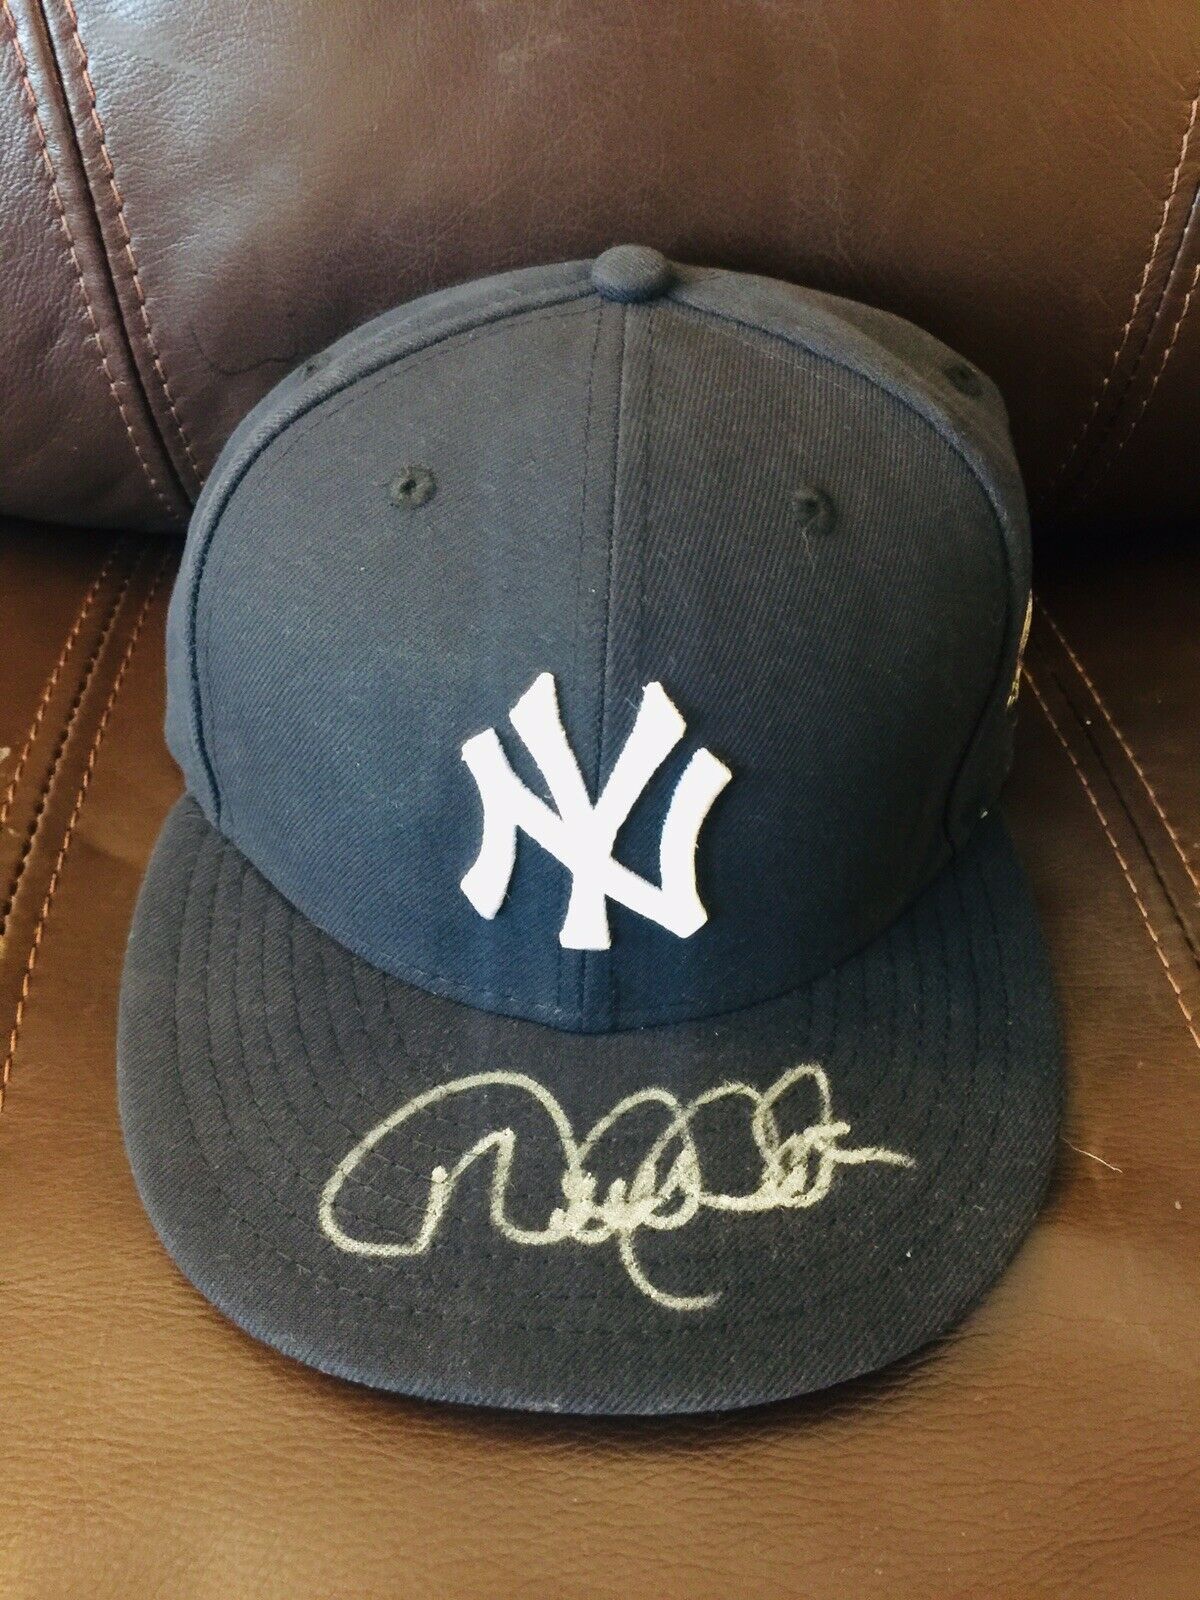 Derek Jeter Signed Autograph Baseball Hat,JSA COA, ESPN The Captain